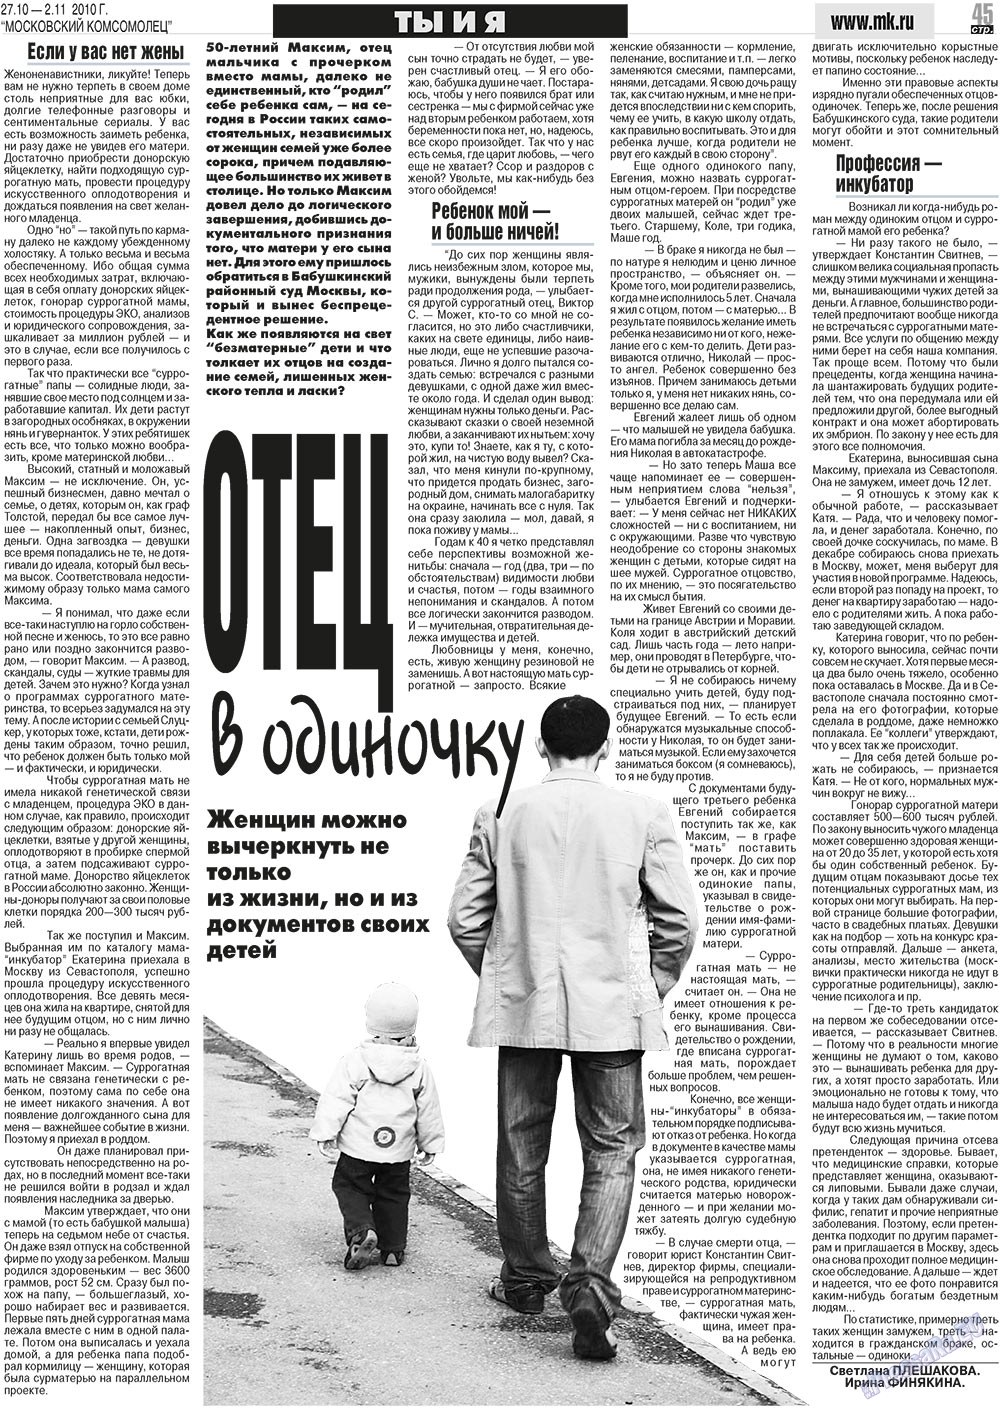 МК Испания, газета. 2010 №43 стр.45